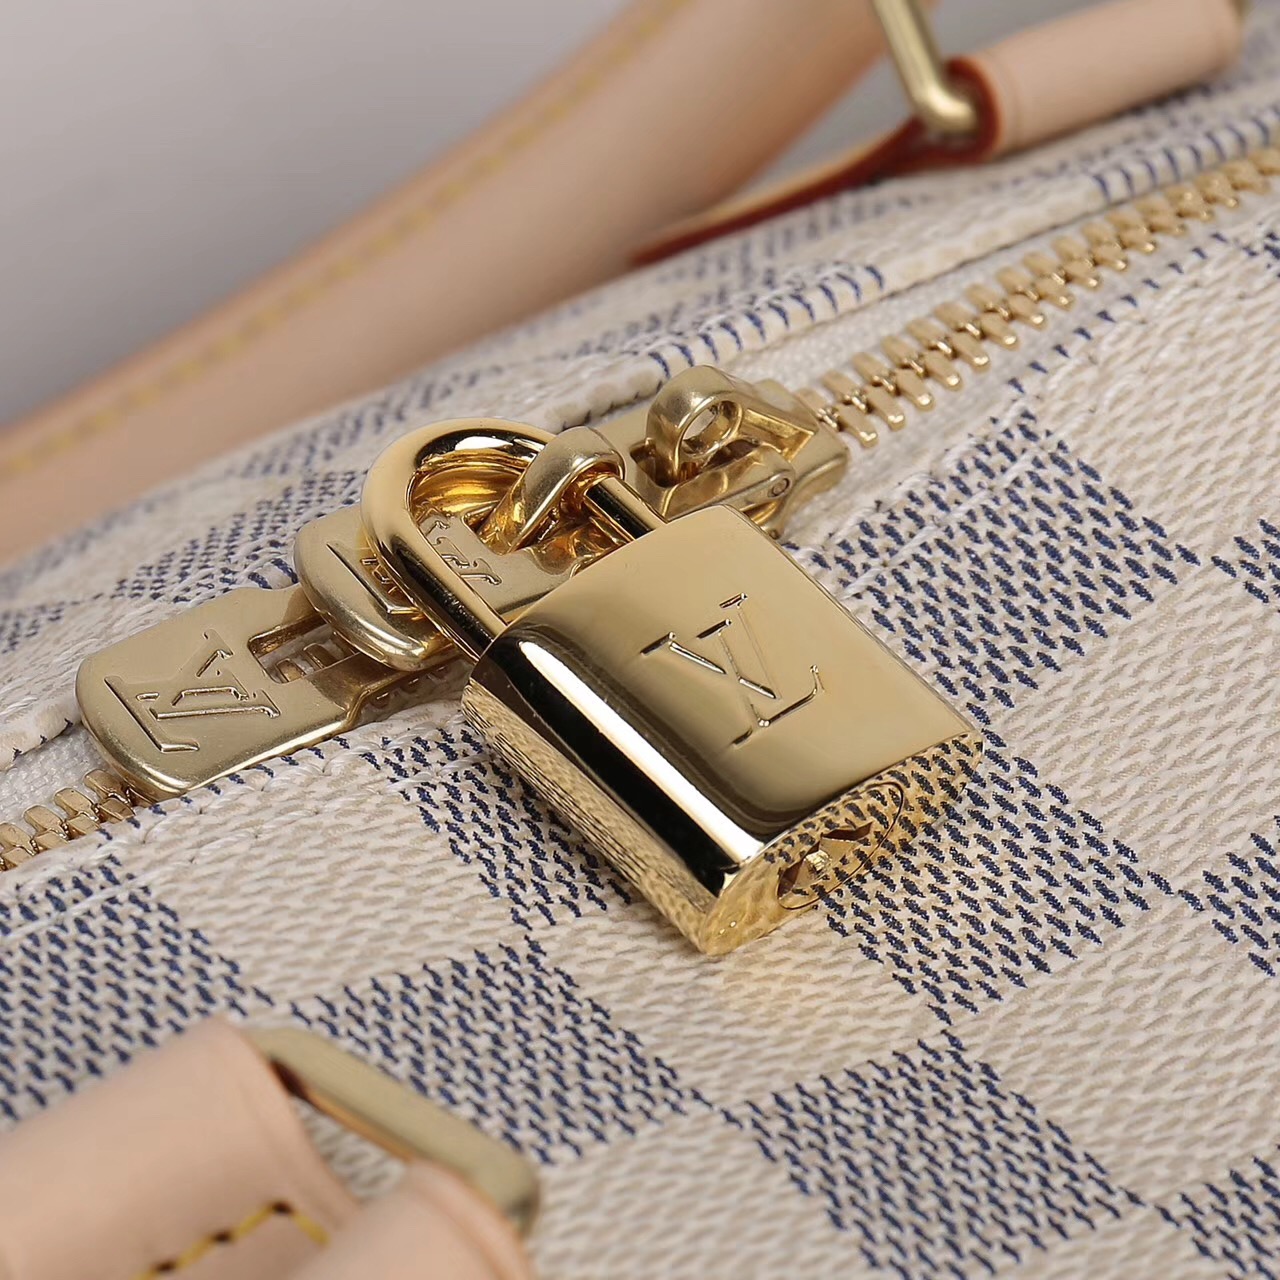 LV Louis Vuitton Speedy 30 Damier bags N41373 Handbags White